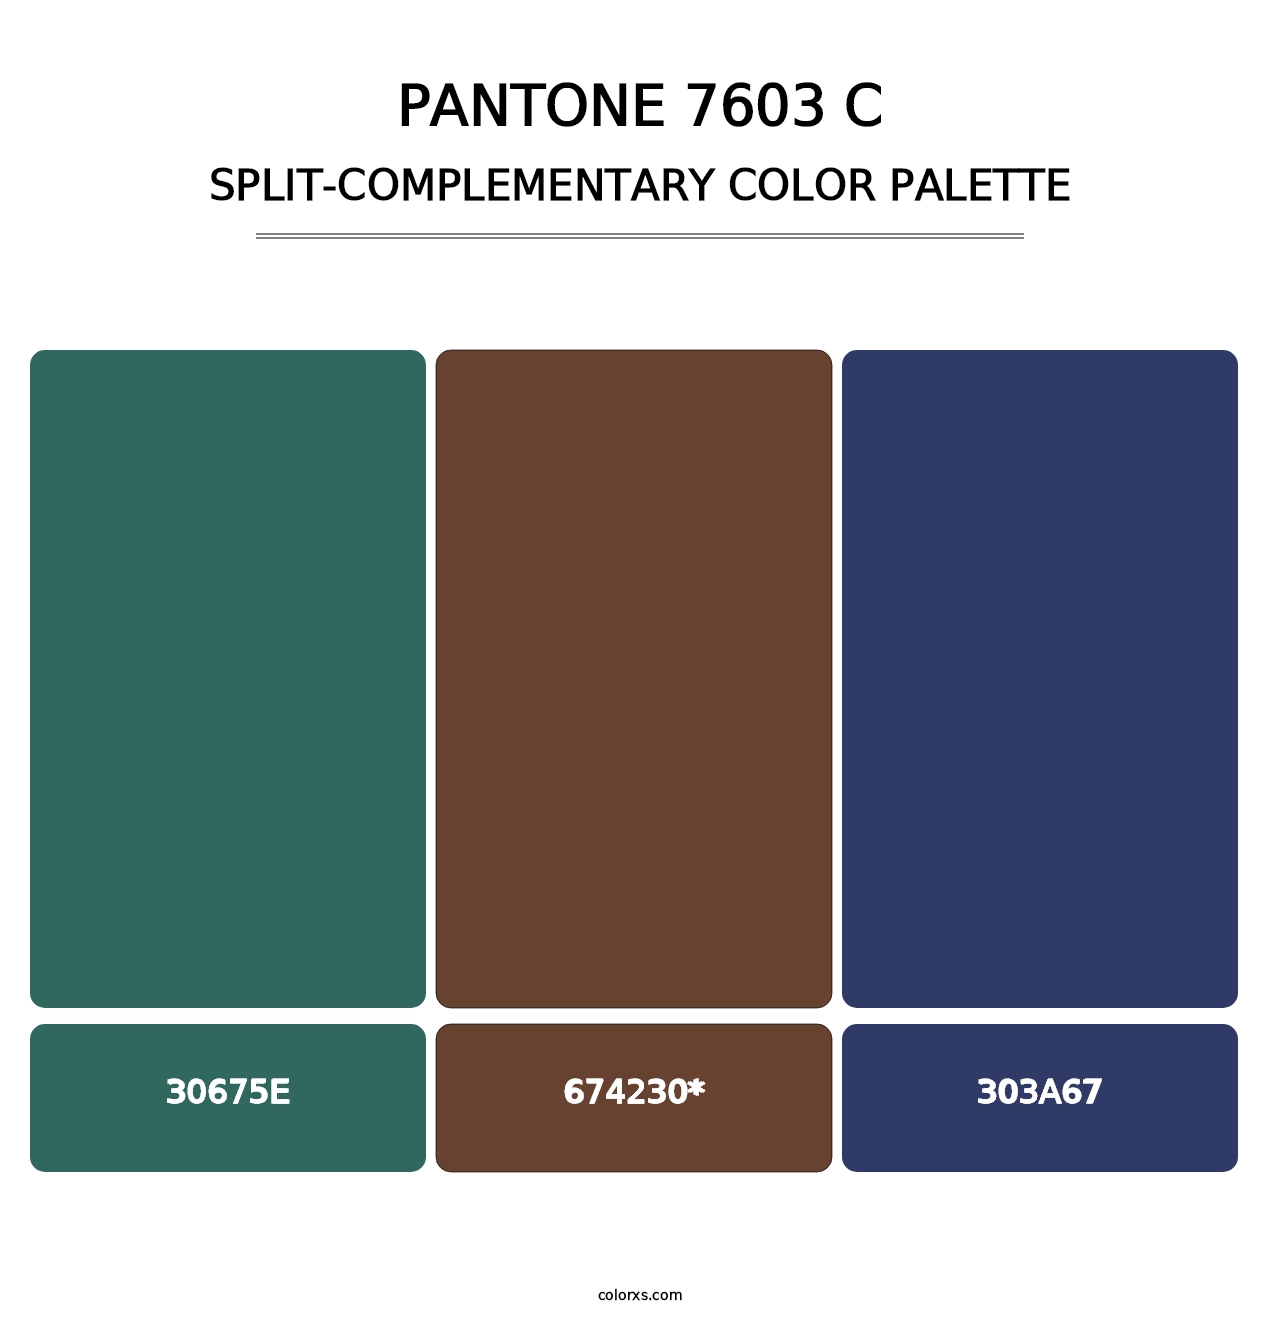 PANTONE 7603 C - Split-Complementary Color Palette